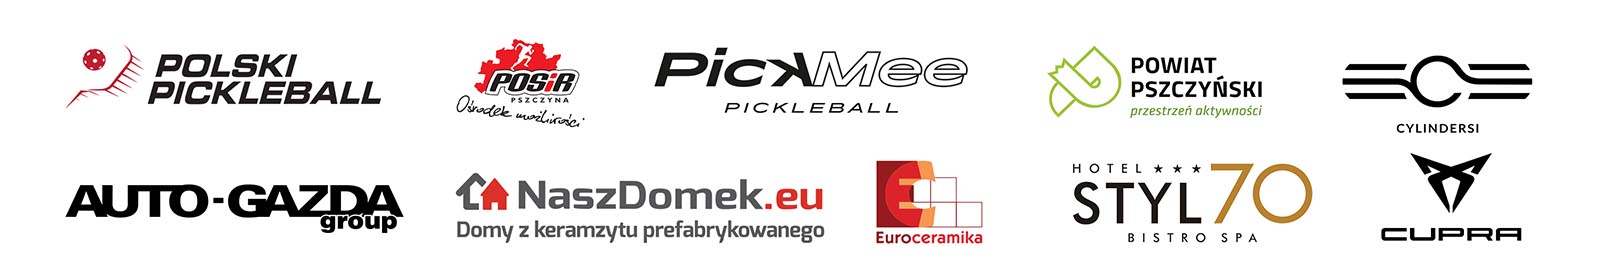 3. Otwarty Turniej Pickleballa - logotypy organizatorzy